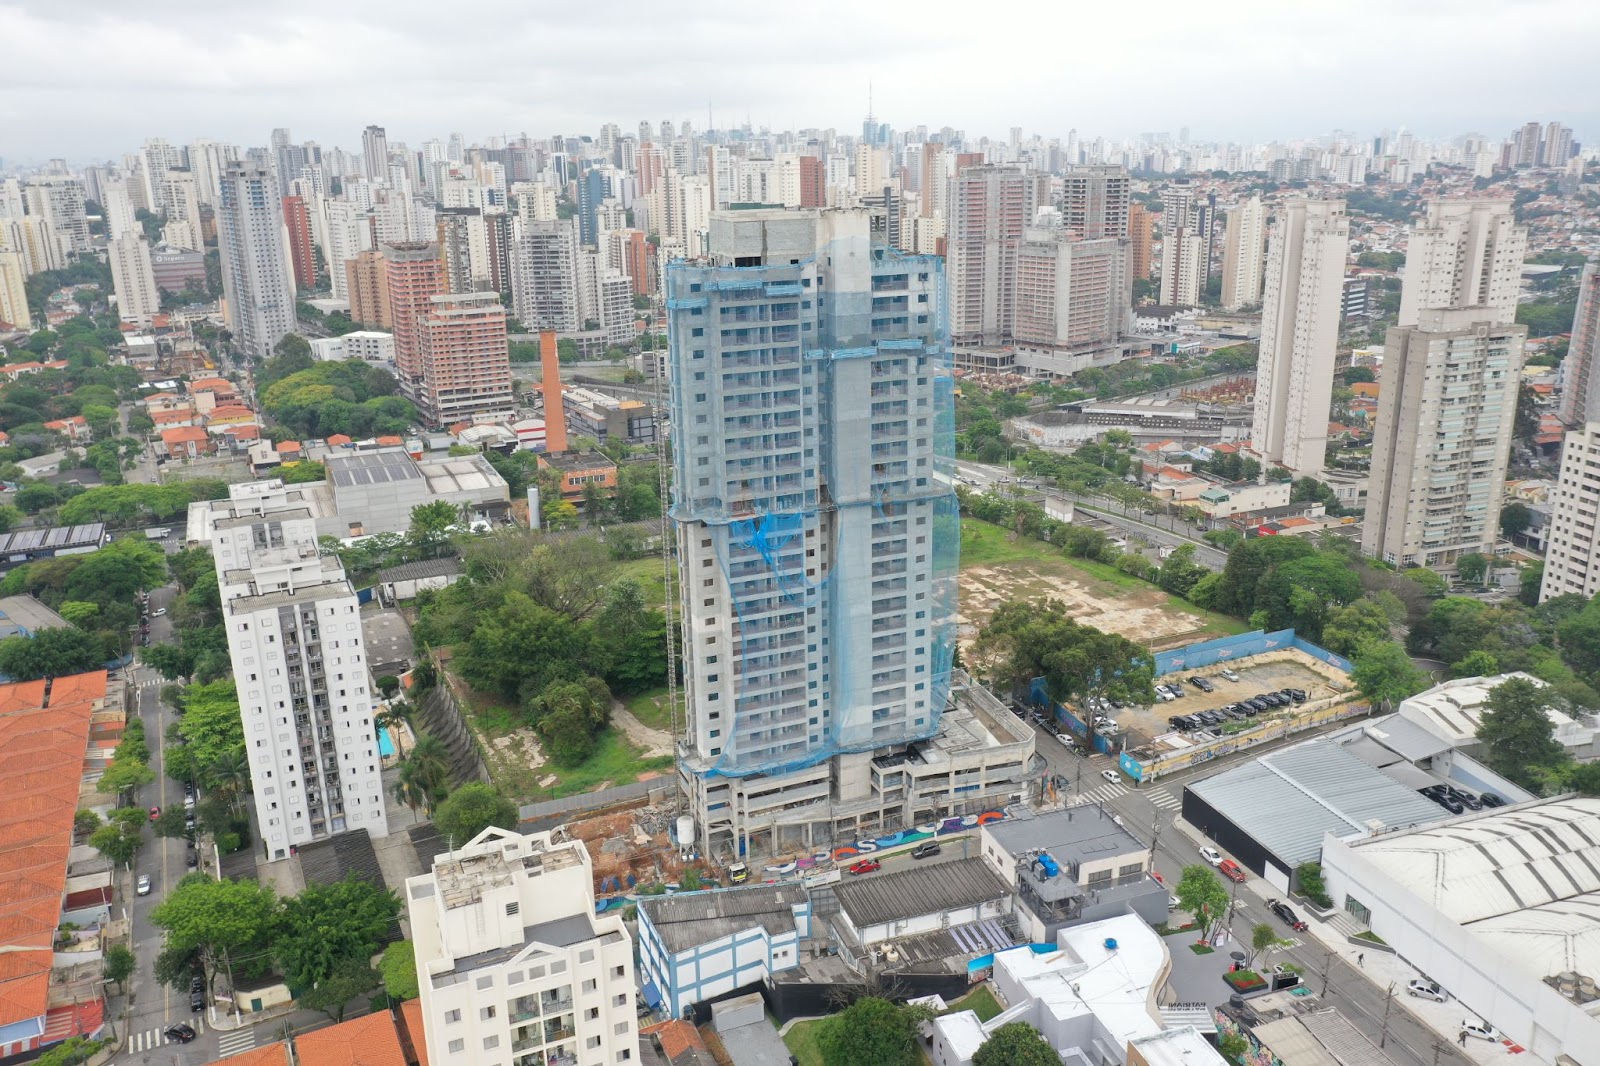 Foto de São Paulo com prédio em destaque com apartamentos para financiar e declarar. Vários prédios ao redor.